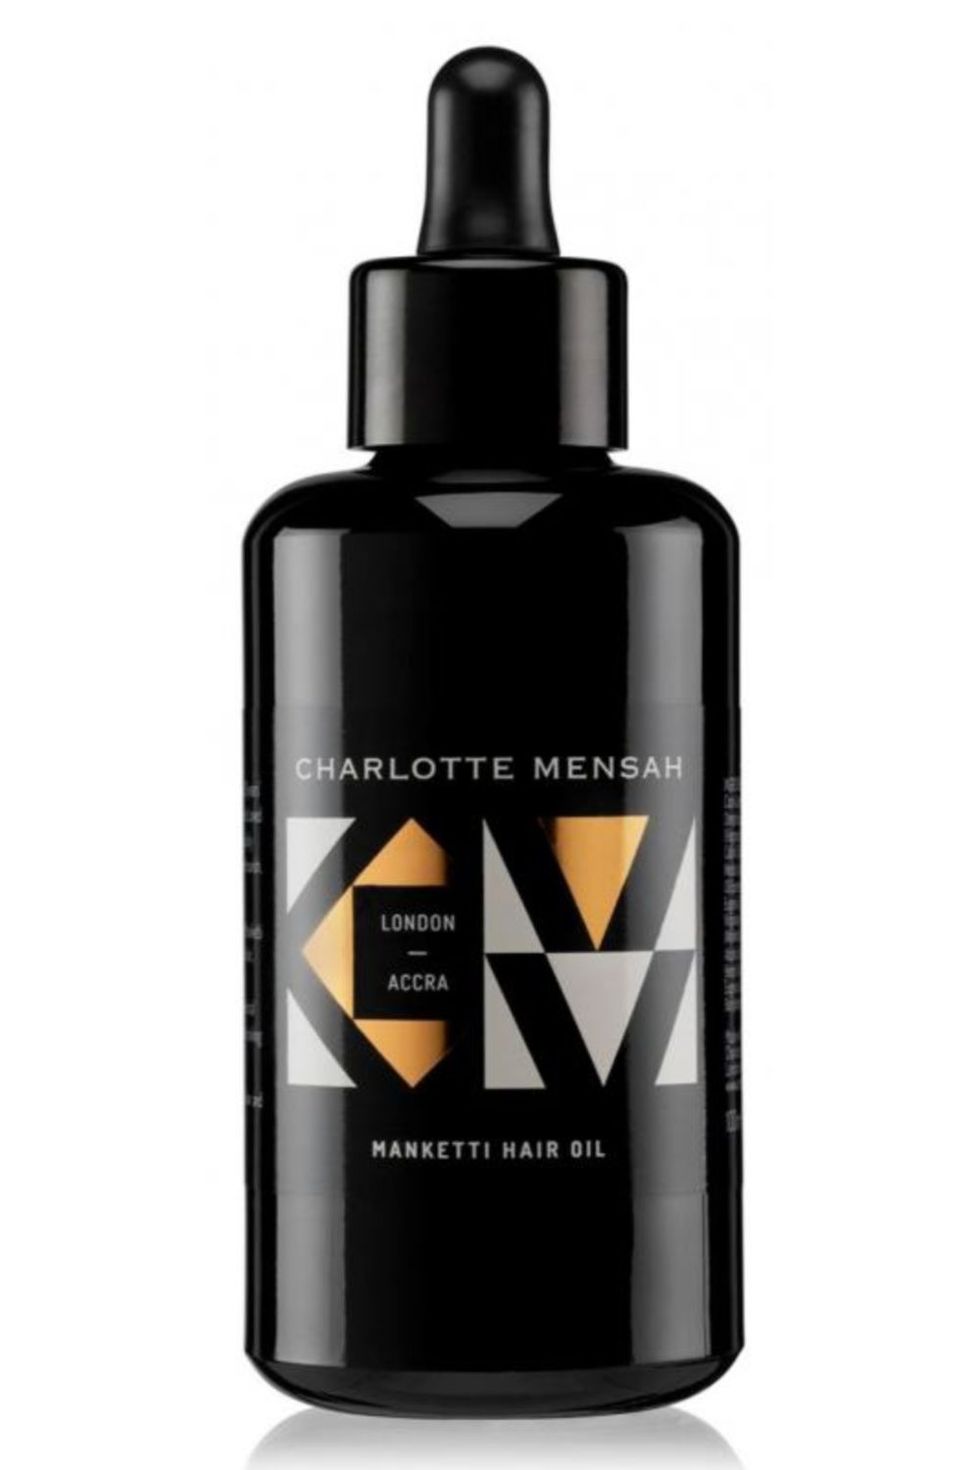 Charlotte Mensah Manketti Hair Oil